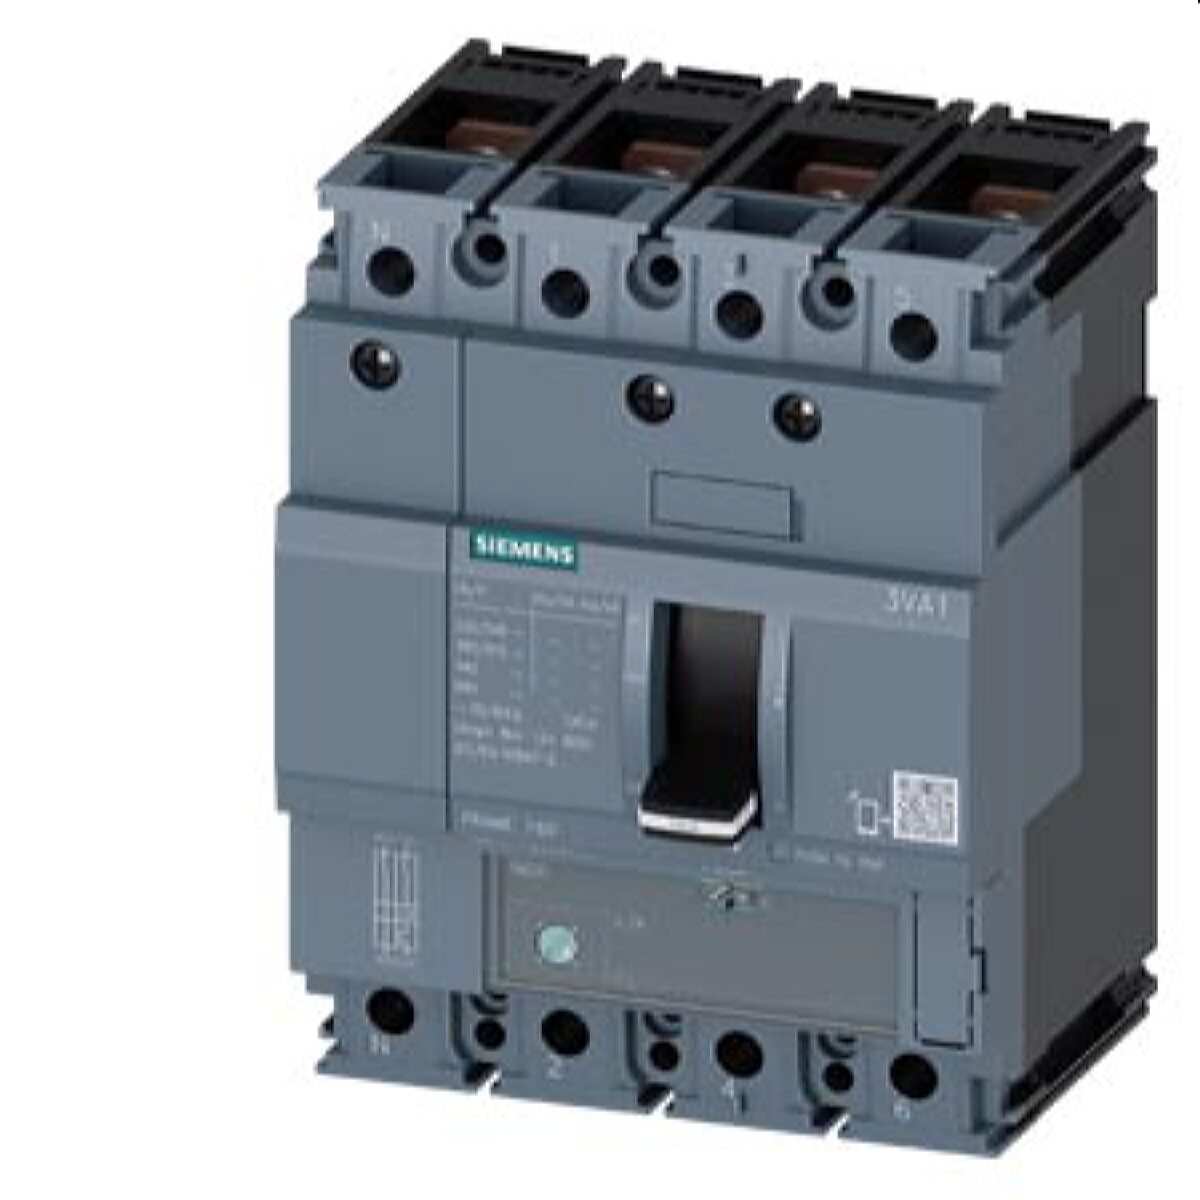 Siemens Leistungsschalter 3VA1 70kA ATFM 14-20A 3VA1120-6EE42-0AA0